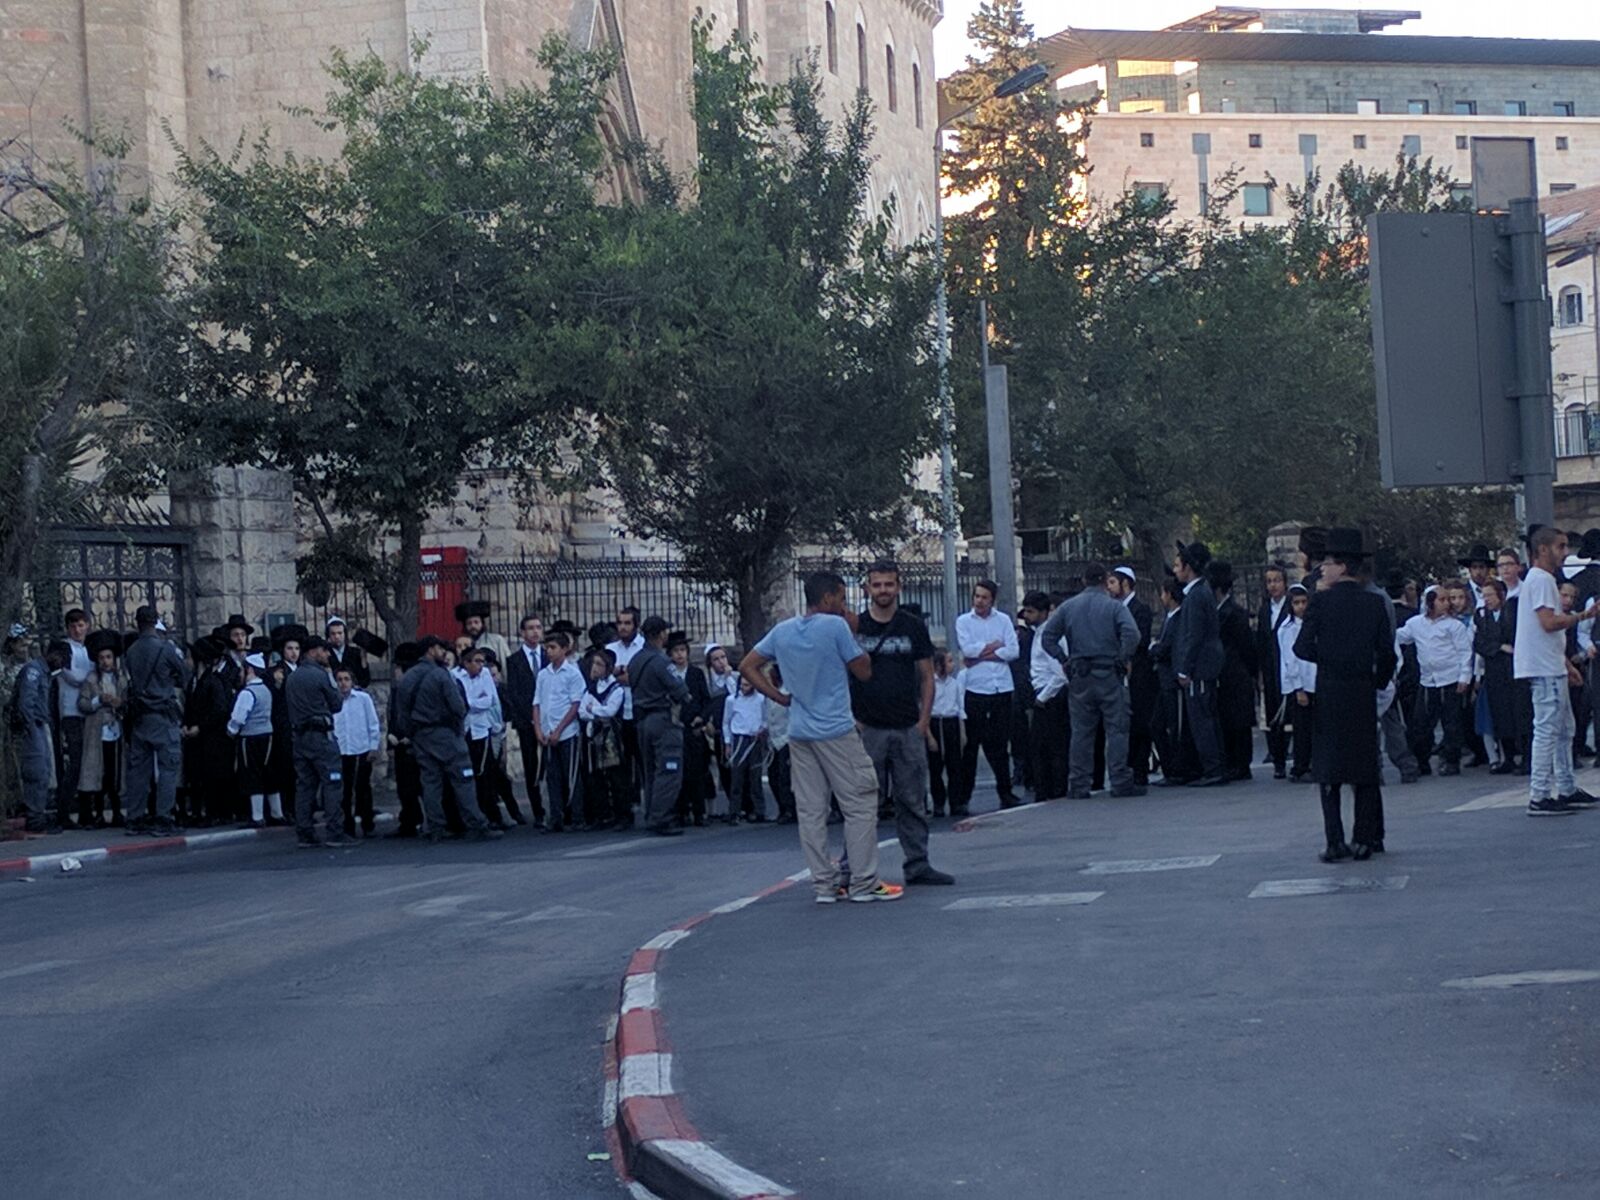 הפגנות חרדים ברחוב הנביאים (צילום: נדב-בן אוד)